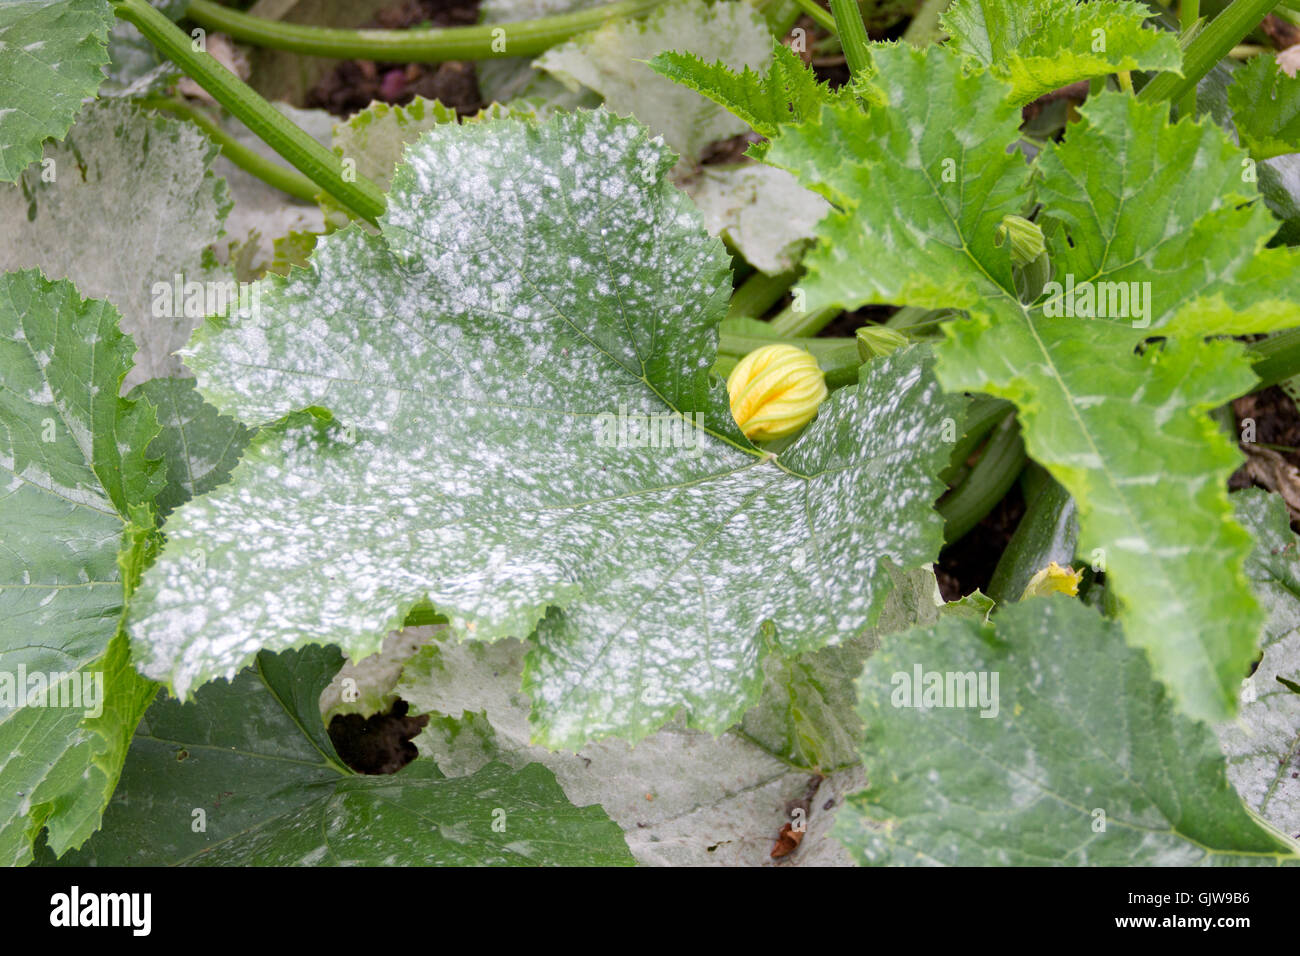 Zucchini-Pflanze mit Schimmel an den Blättern Stockfotografie - Alamy